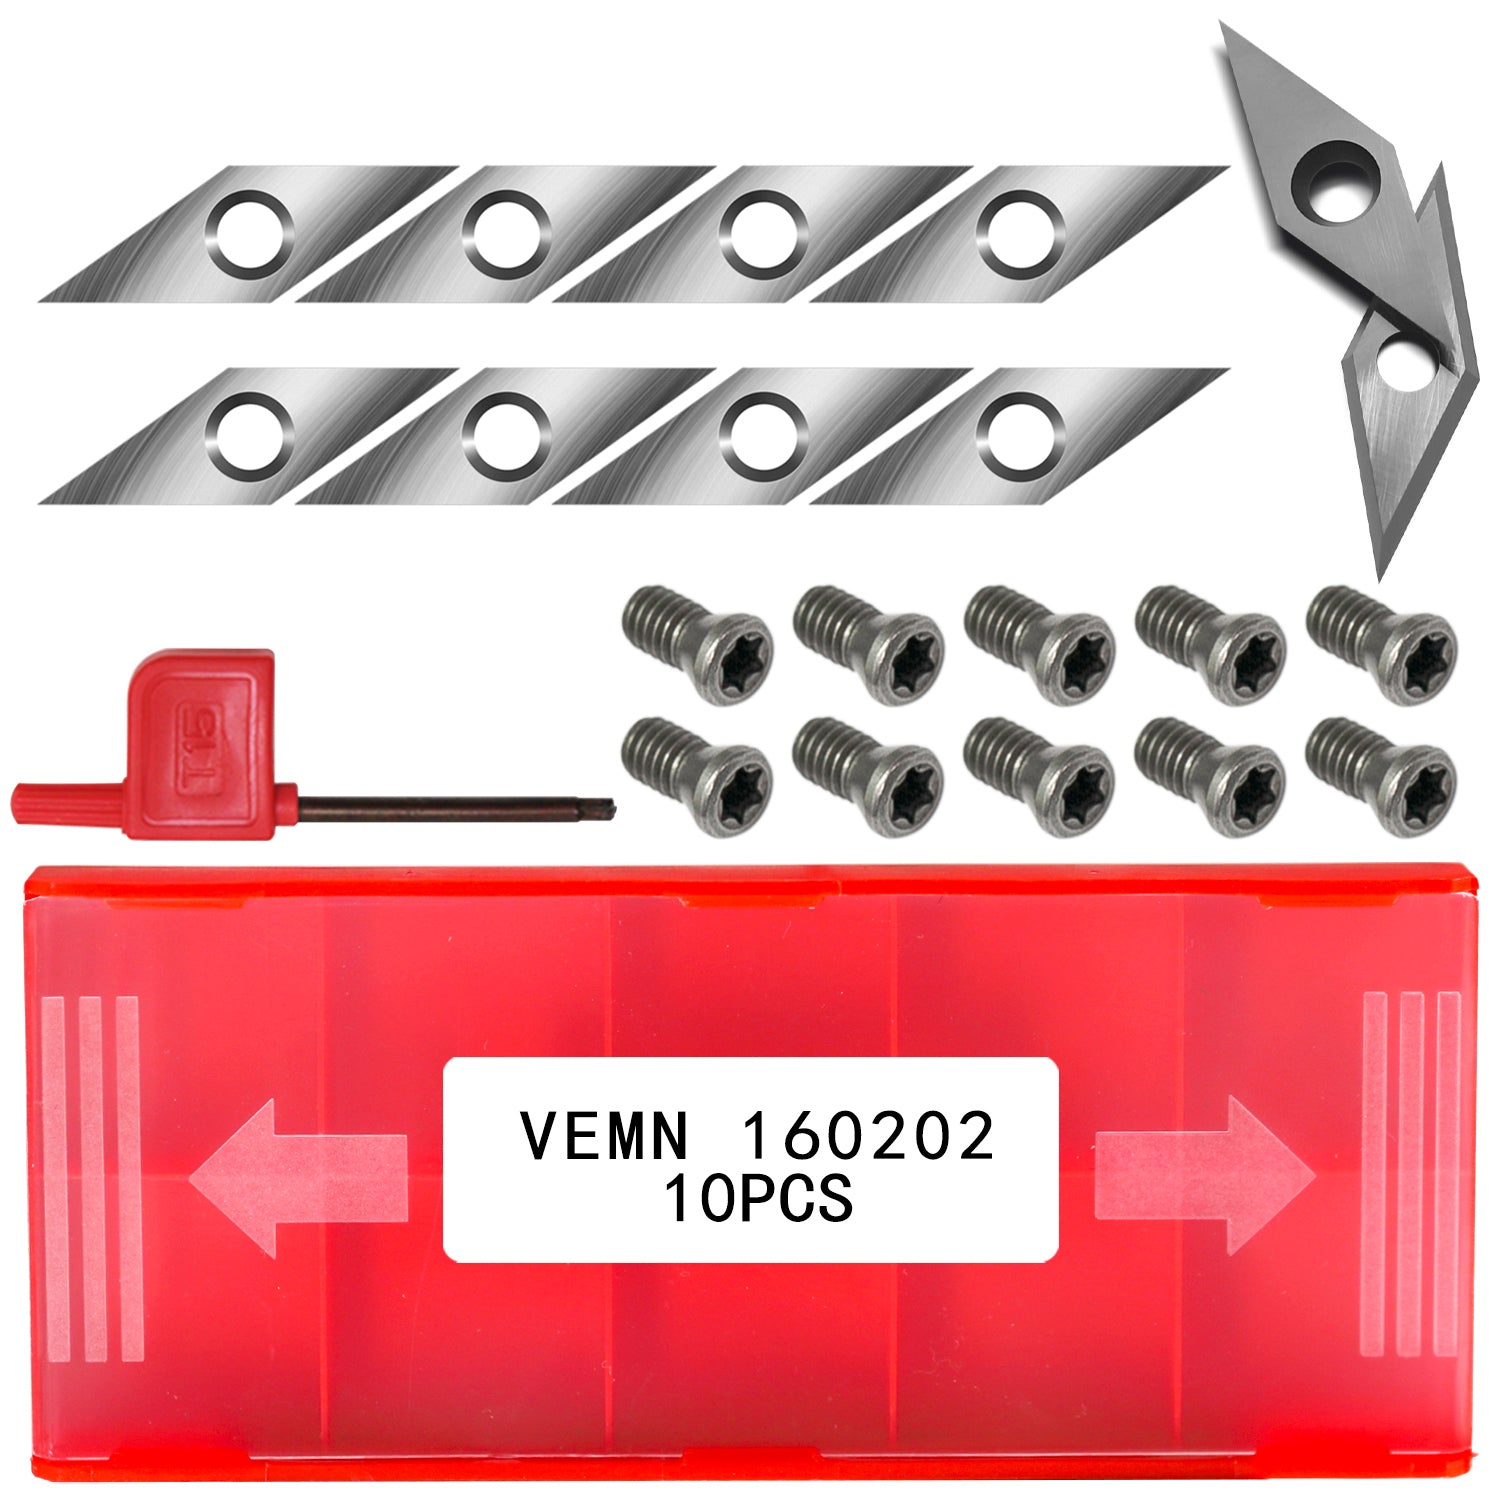 VEMN 160202 diamond carbide insert cutter